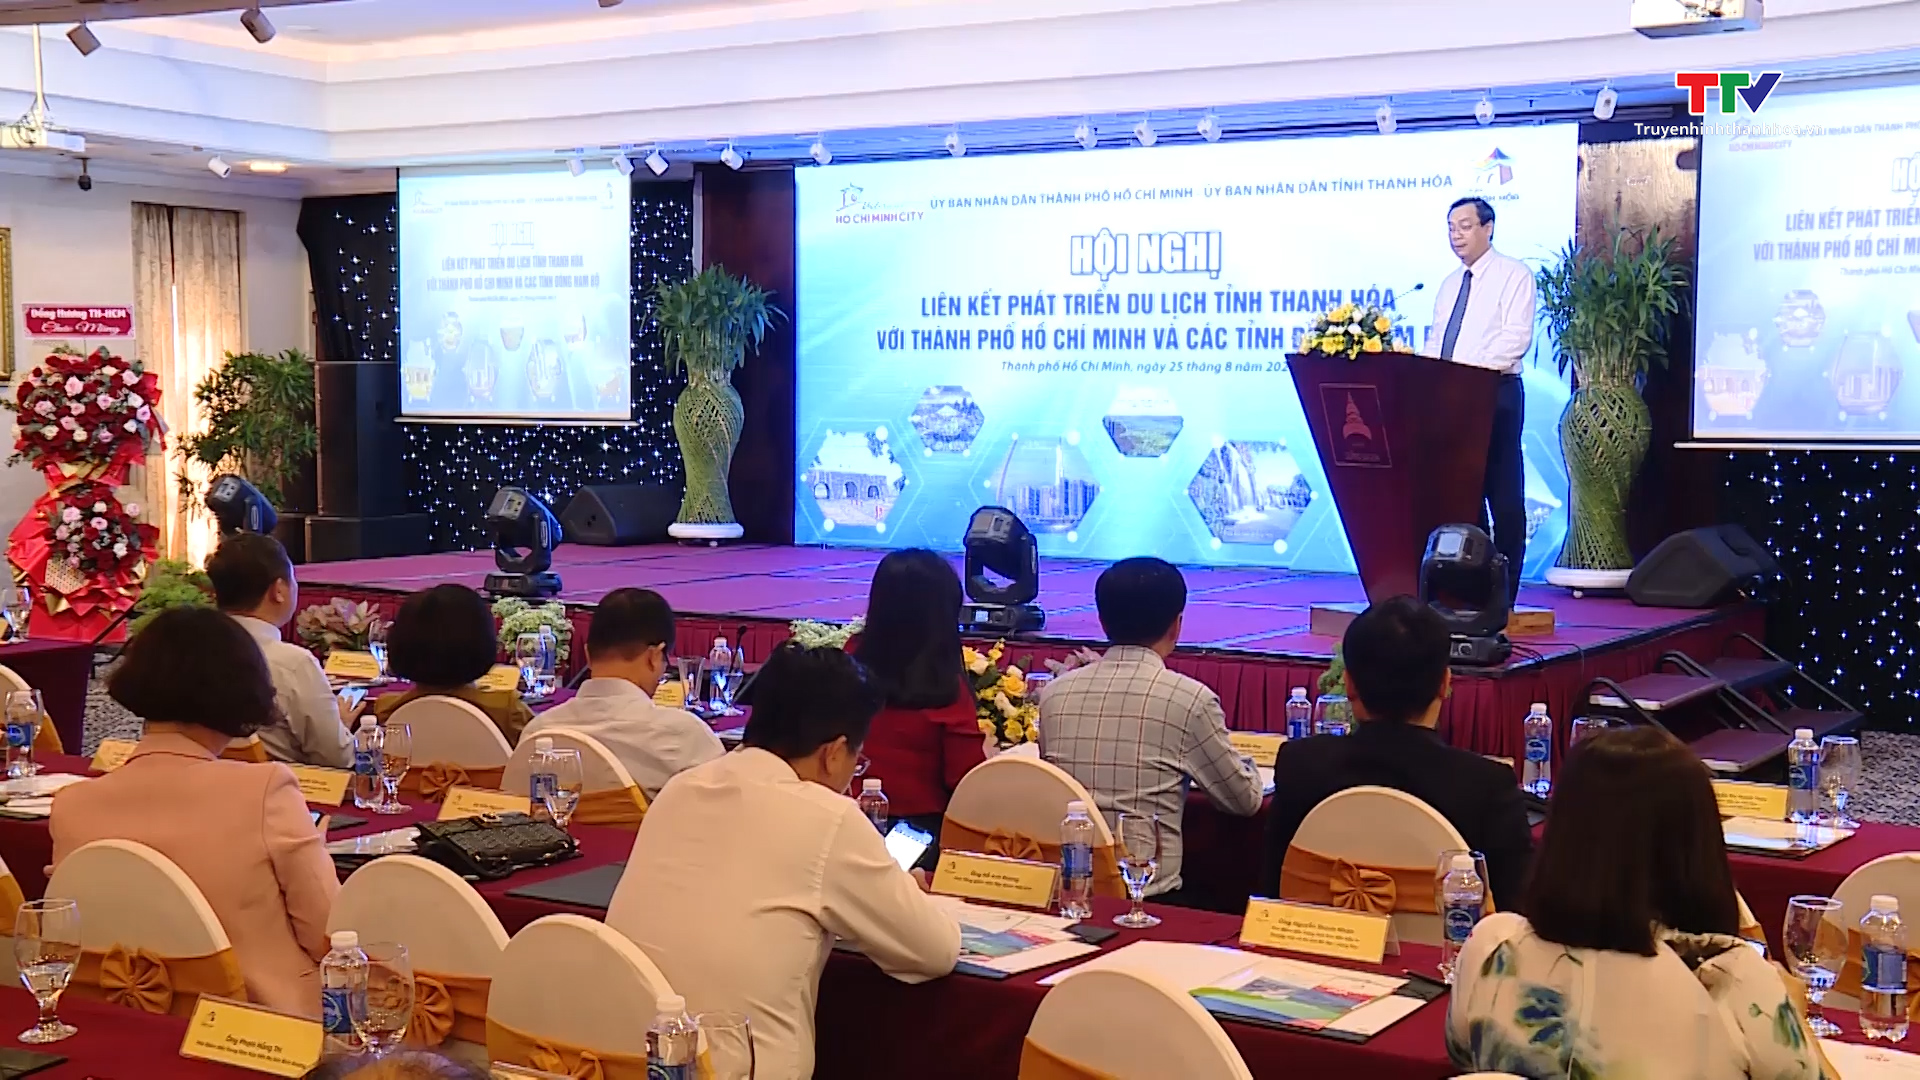 Thanh Hóa liên kết phát triển du lịch với thành phố Hồ Chí Minh và các tỉnh Đông Nam Bộ - Ảnh 5.